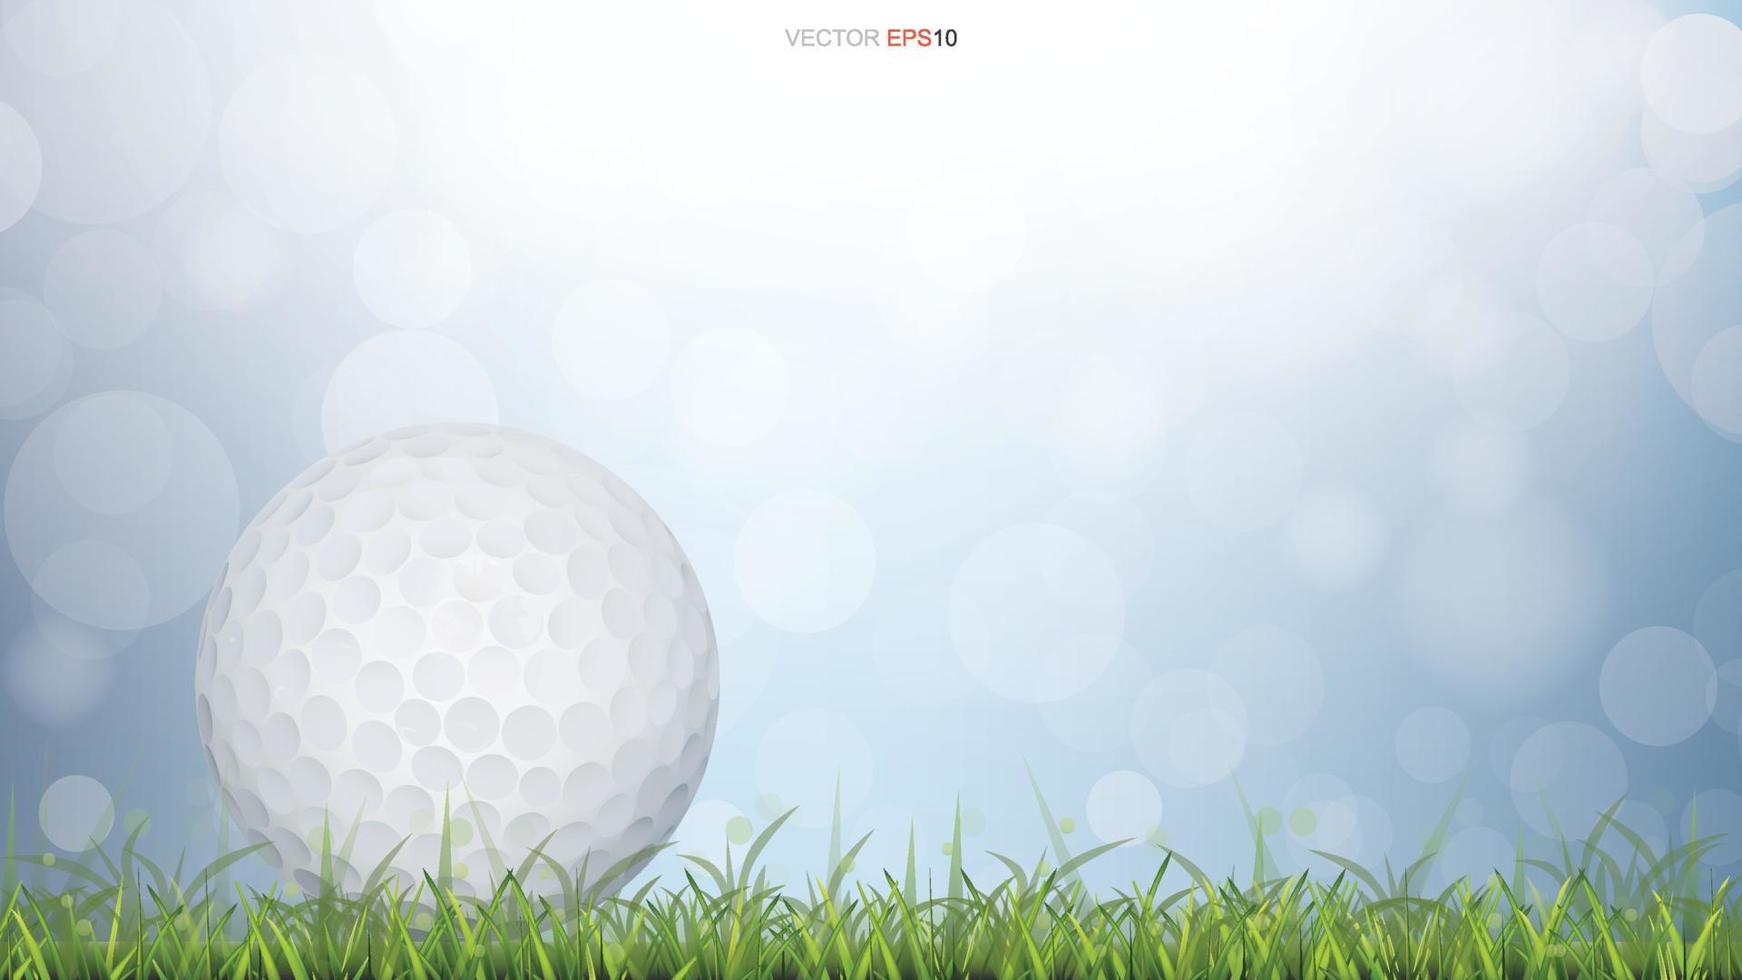 pelota de golf en un campo de hierba verde con un fondo bokeh borroso claro. vector. vector